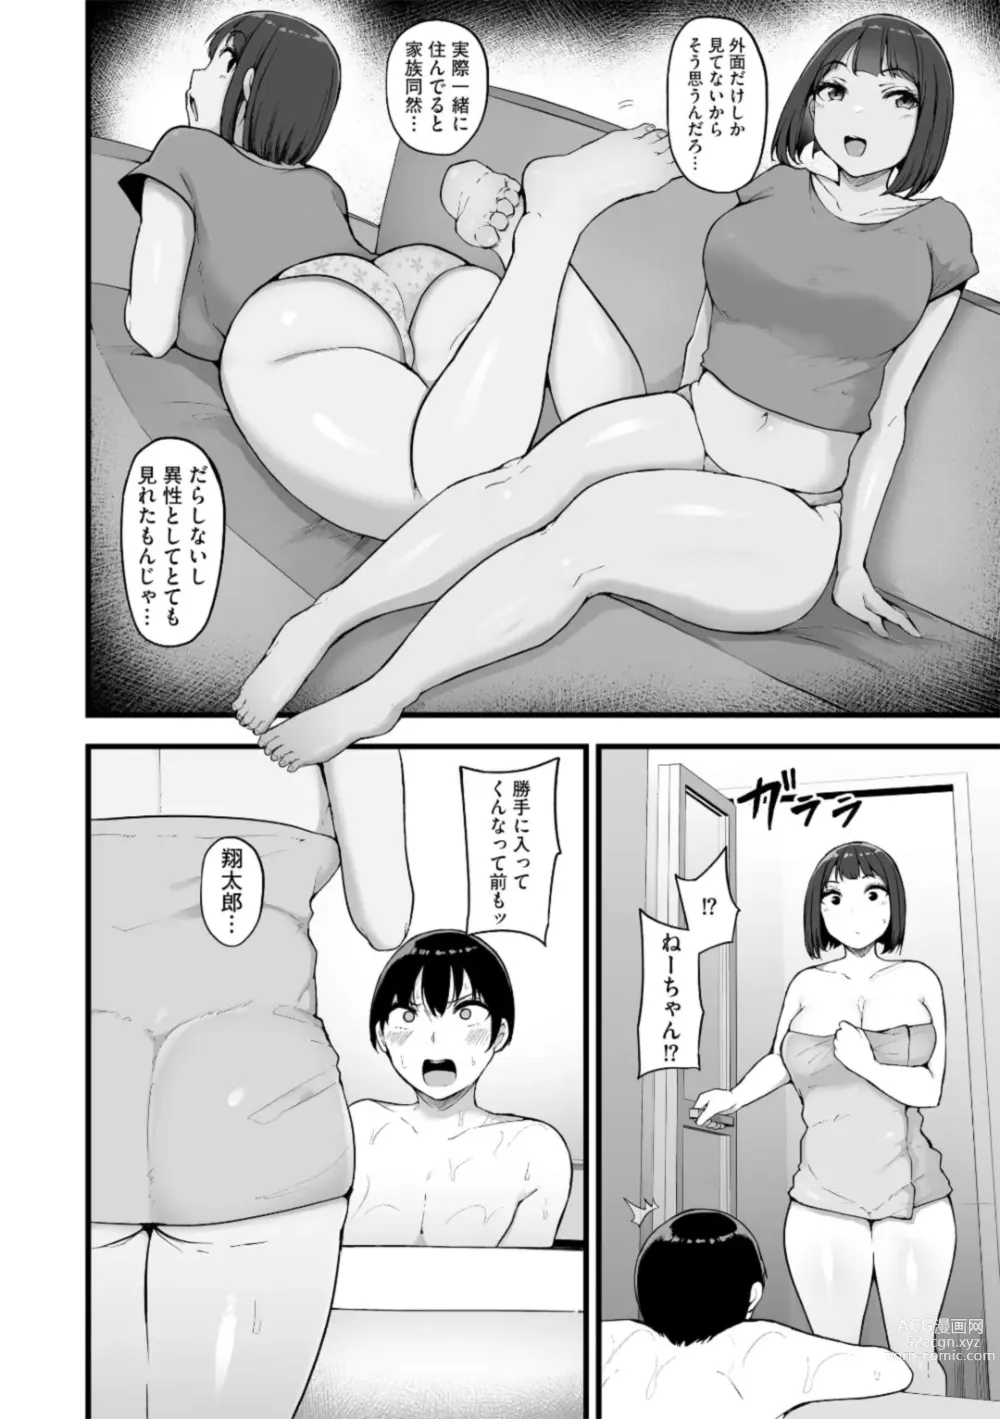 Page 6 of manga Honou ni wa Katenakatta 3